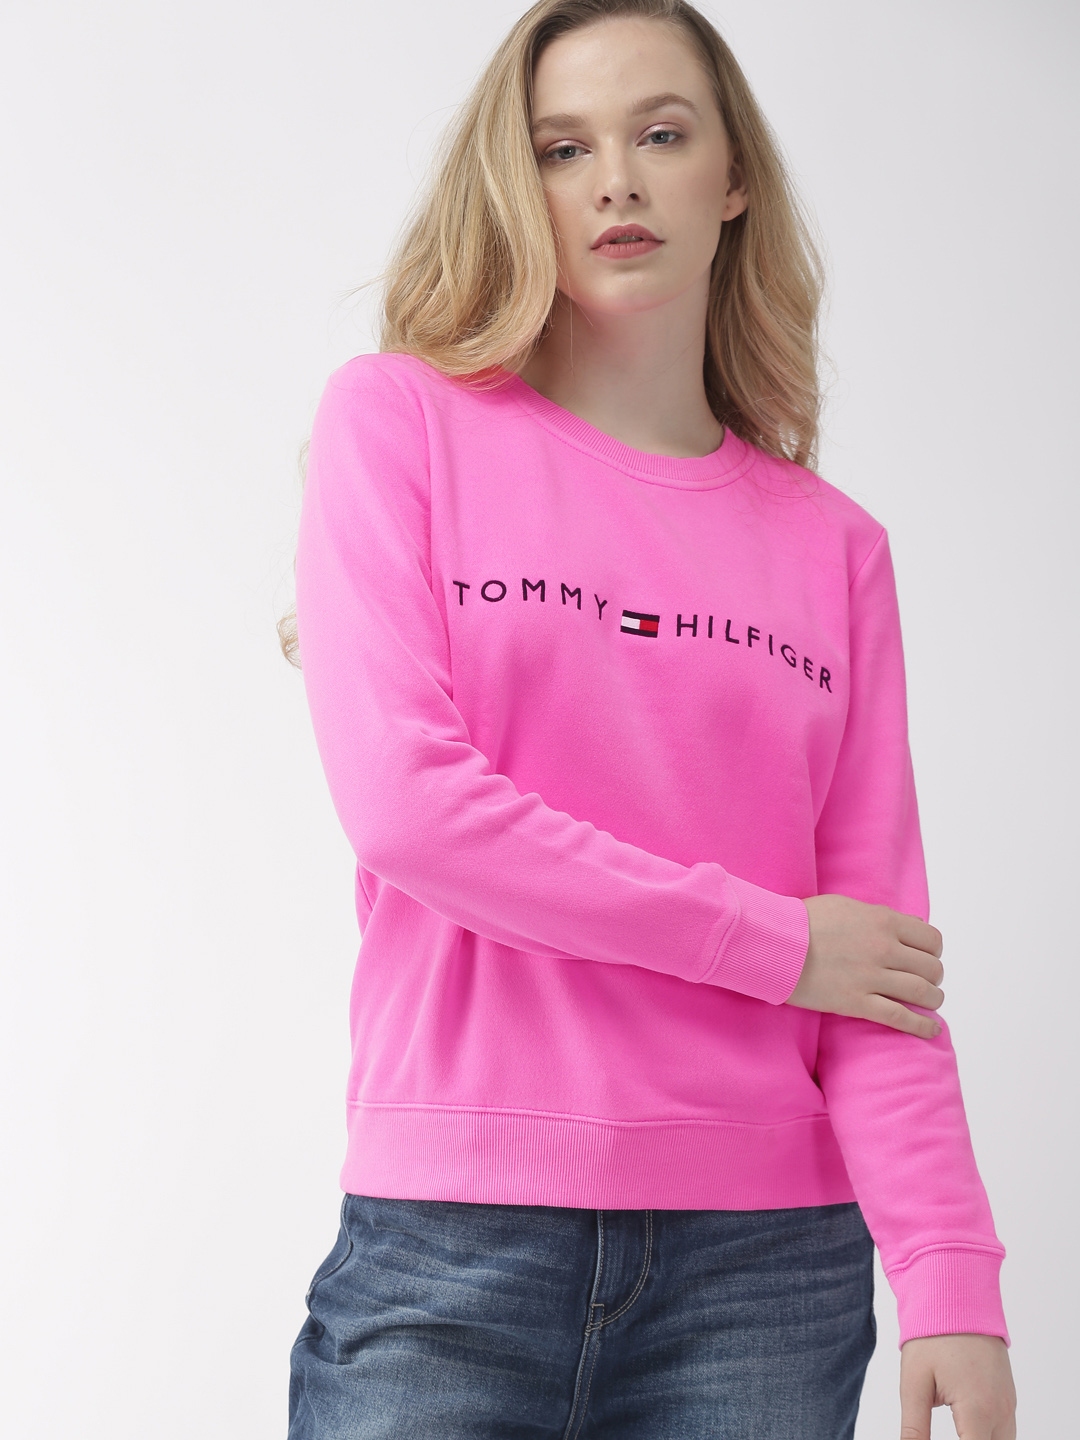 tommy hilfiger sweatshirt pink